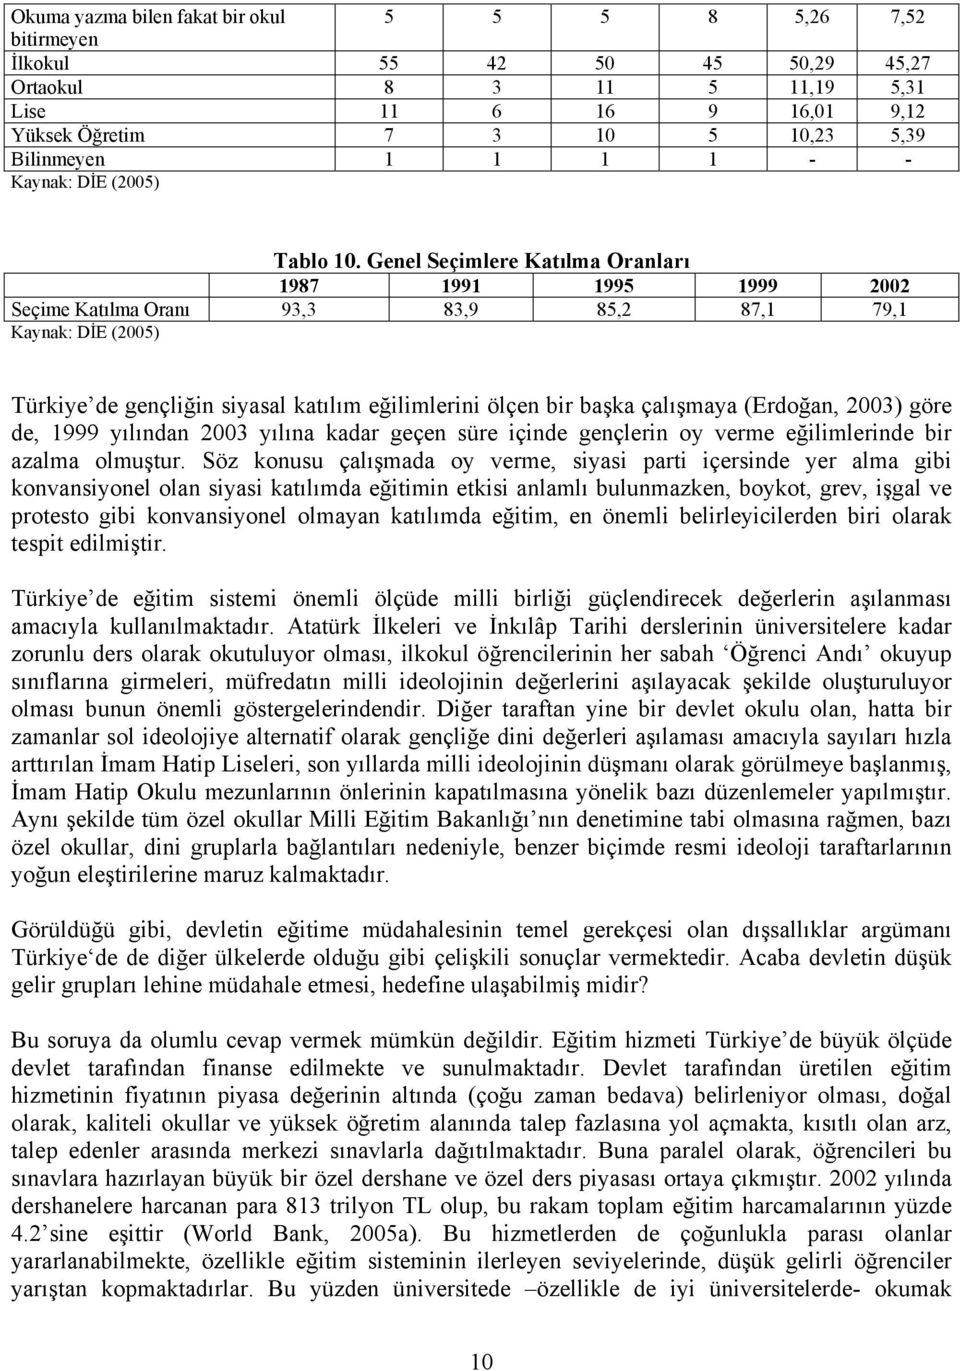 Genel Seçimlere Katılma Oranları 1987 1991 1995 1999 2002 Seçime Katılma Oranı 93,3 83,9 85,2 87,1 79,1 Kaynak: DİE (2005) Türkiye de gençliğin siyasal katılım eğilimlerini ölçen bir başka çalışmaya